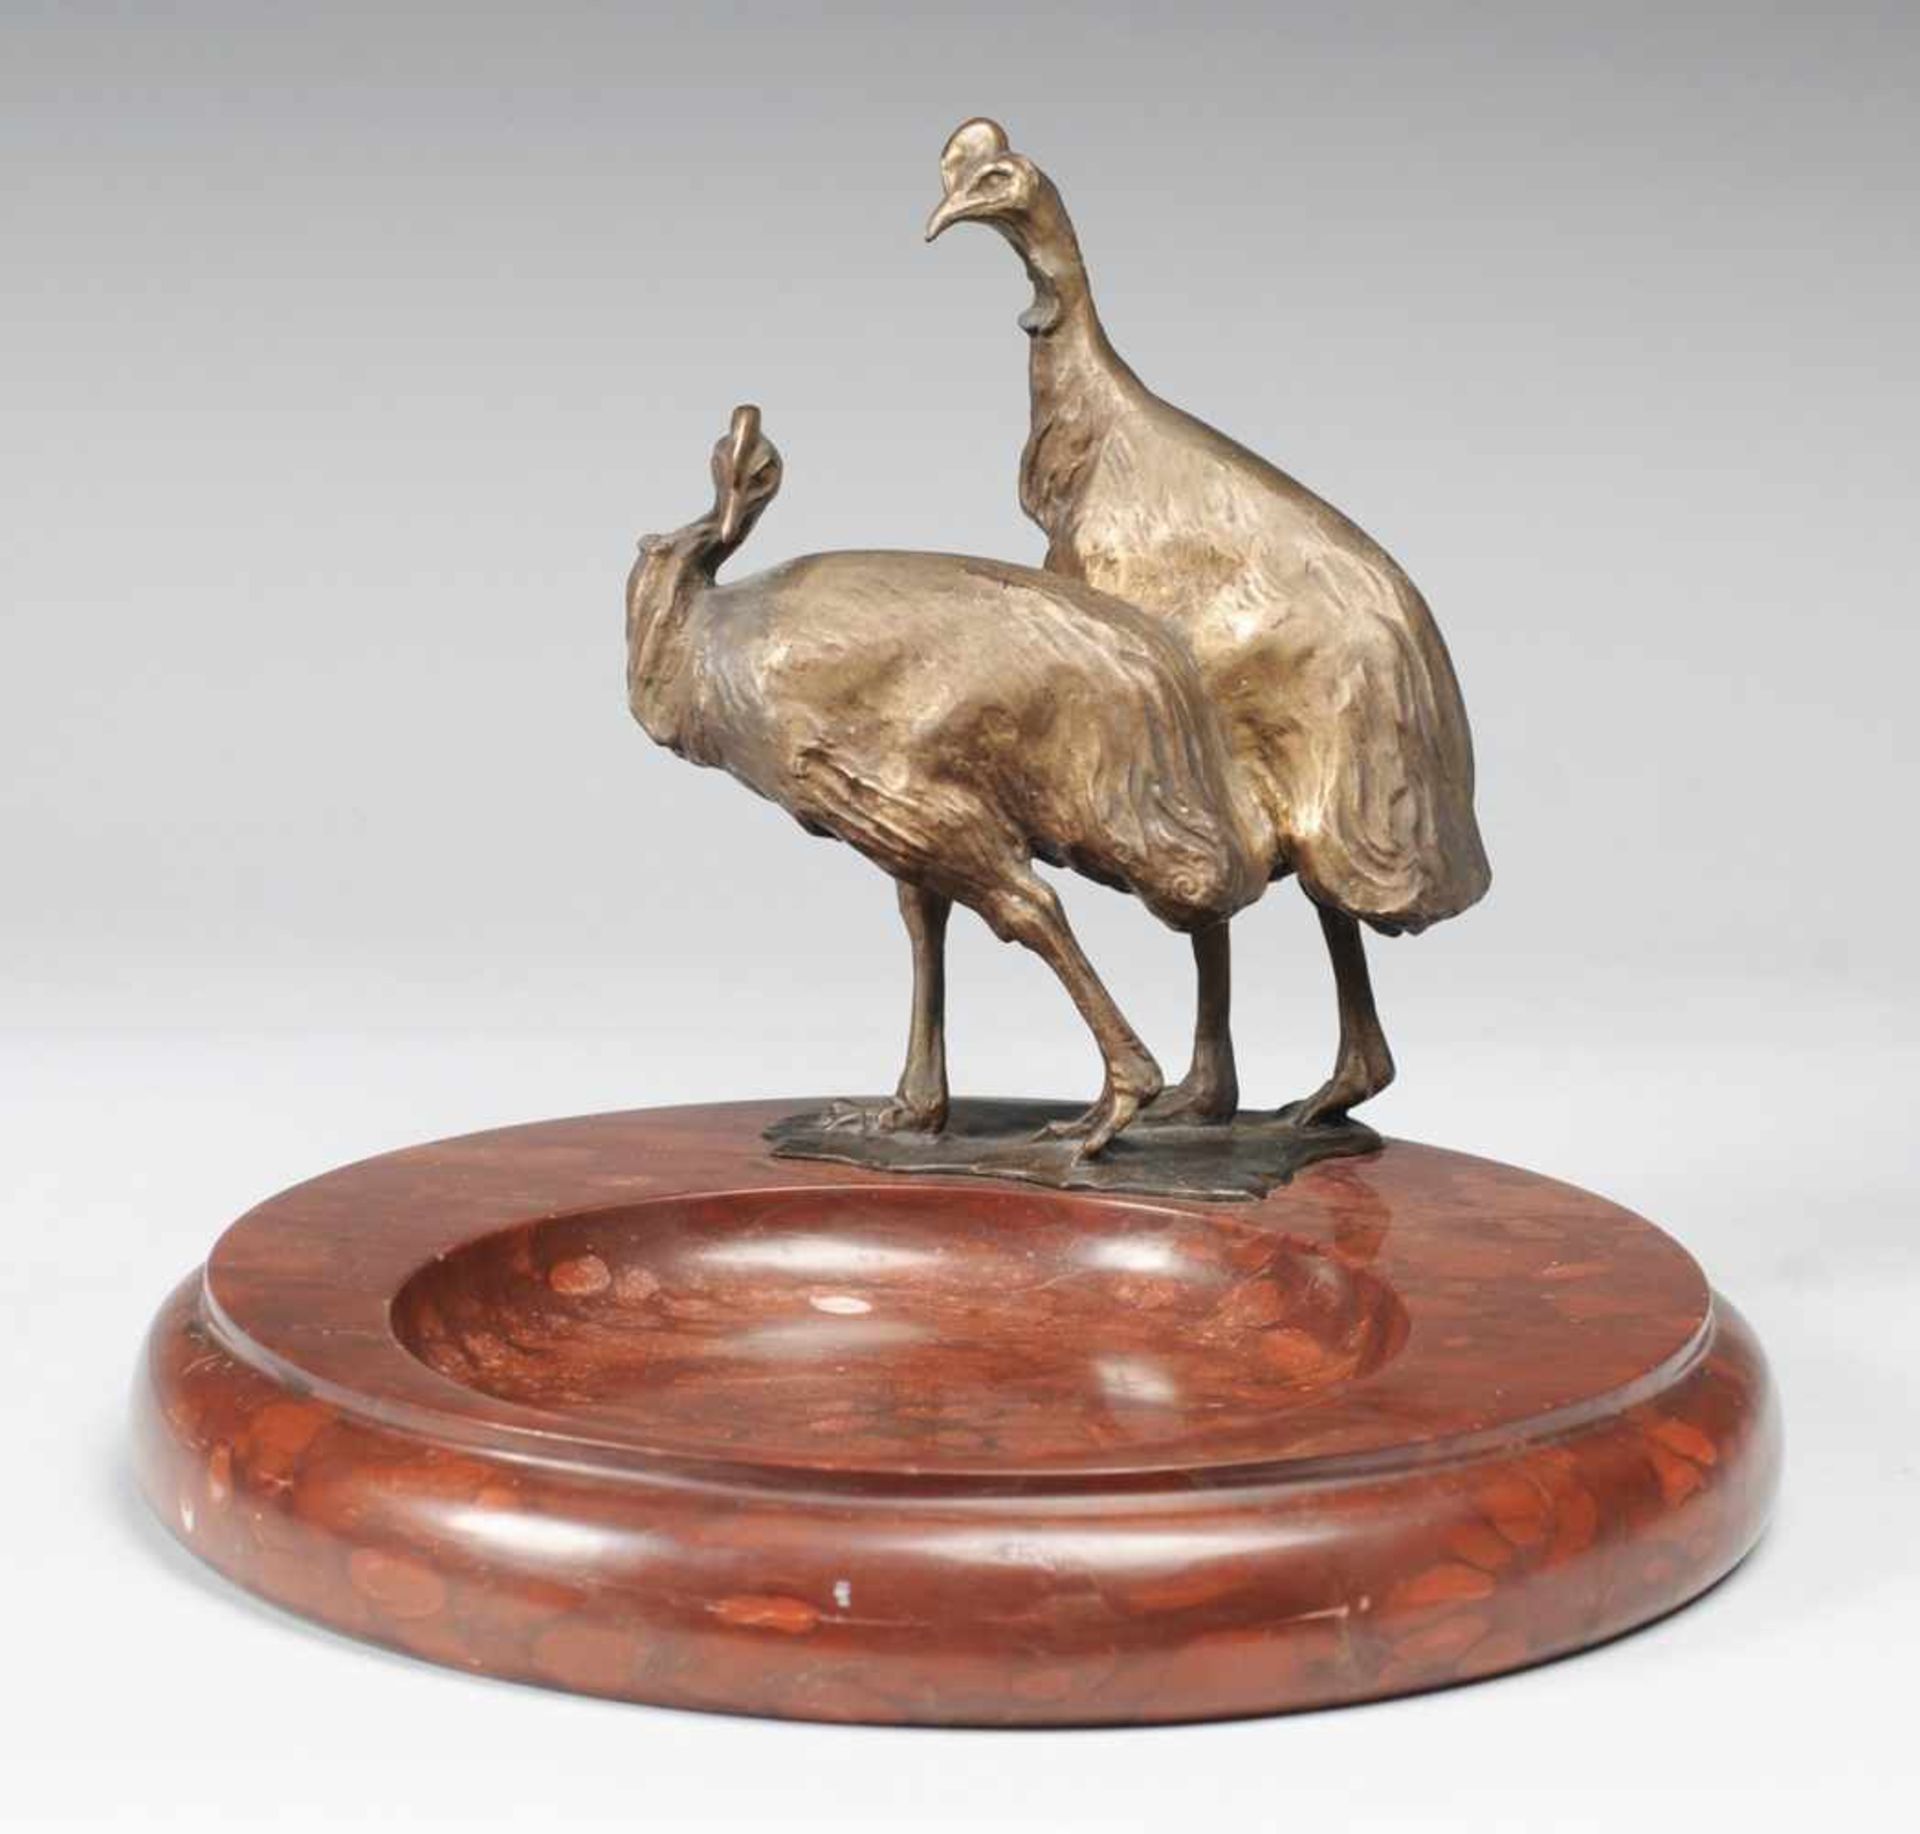 Kreye, W. (Deutscher Bildhauer, A. 20. Jh.) Rotbrauner Kalkstein u. Bronze, patiniert. Runde